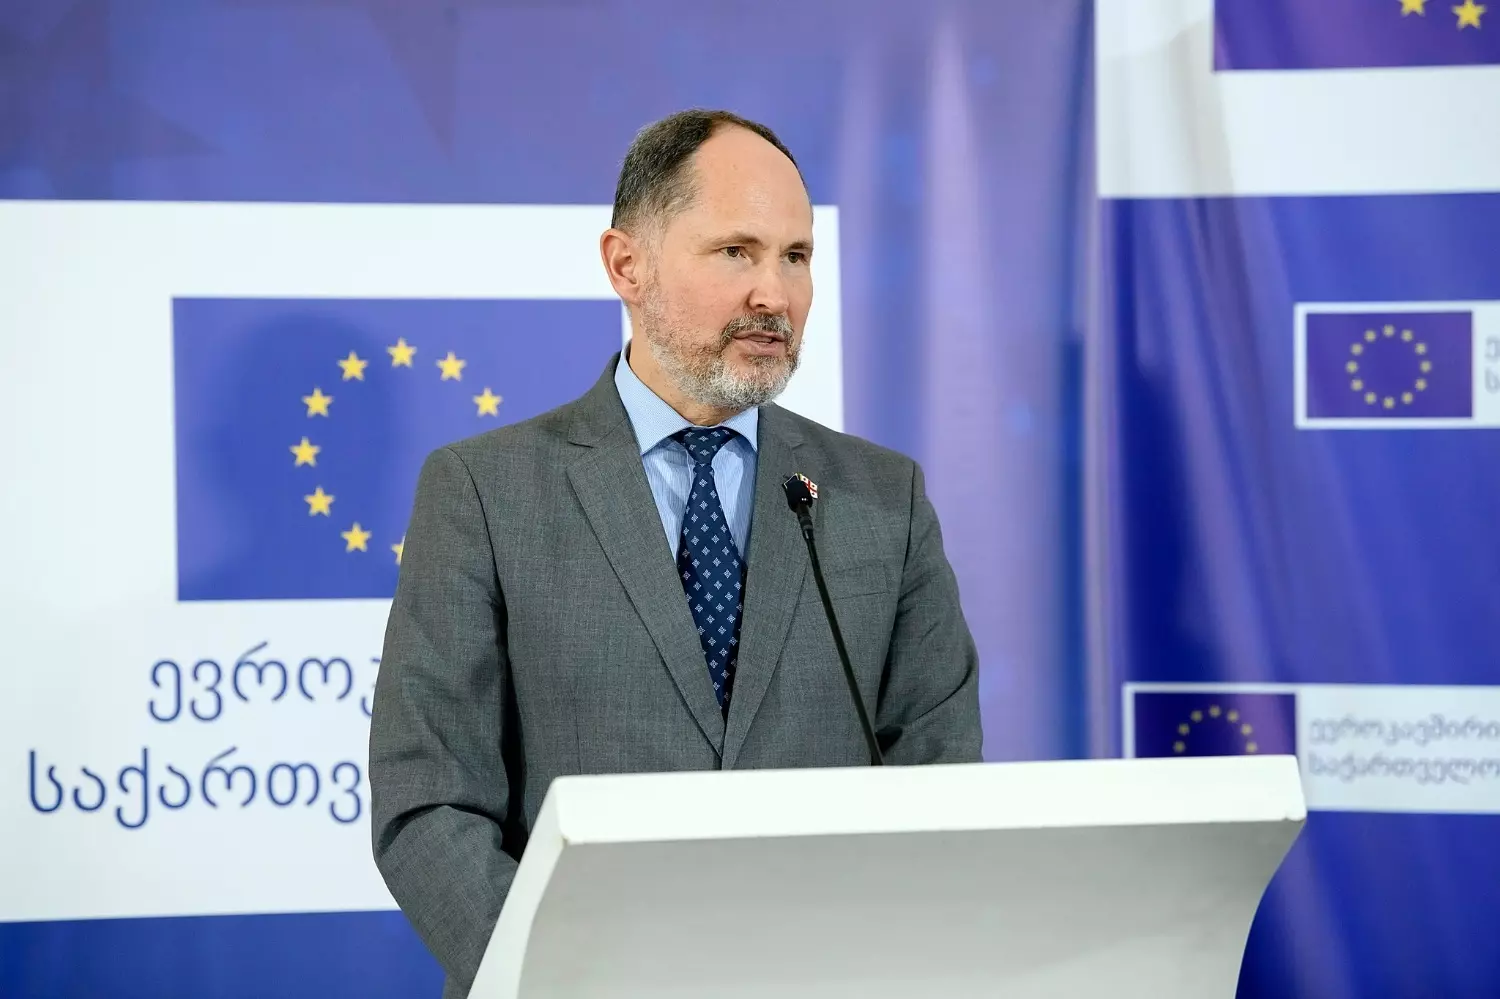 Посол ЕС в Грузии Павел Герчинский заявил, что процесс принятия Грузии в ЕС будет продолжен после выполнения 9 условий